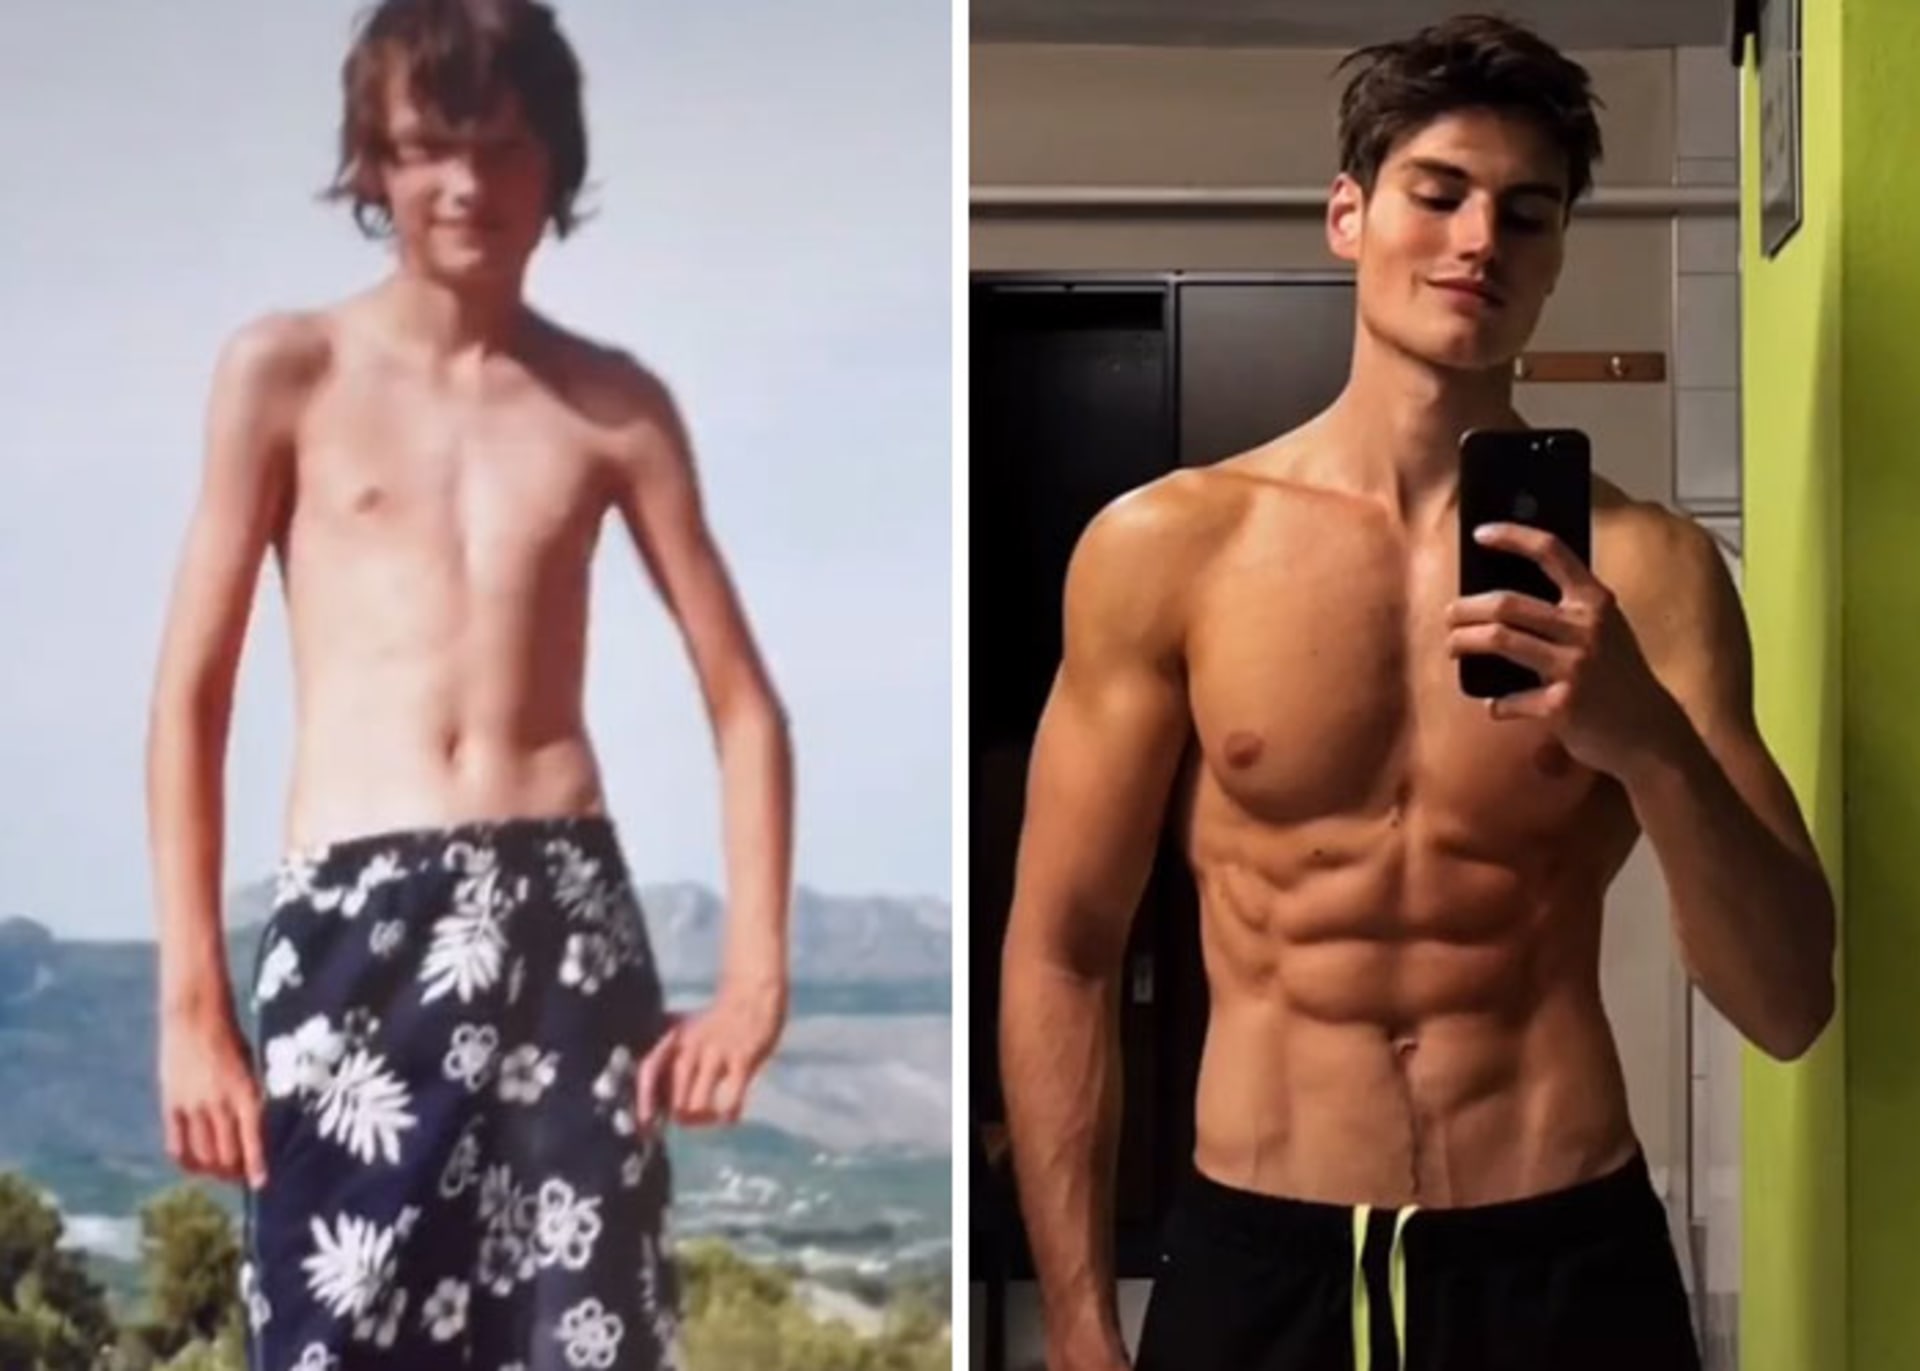 Proměny lidí od puberty 4